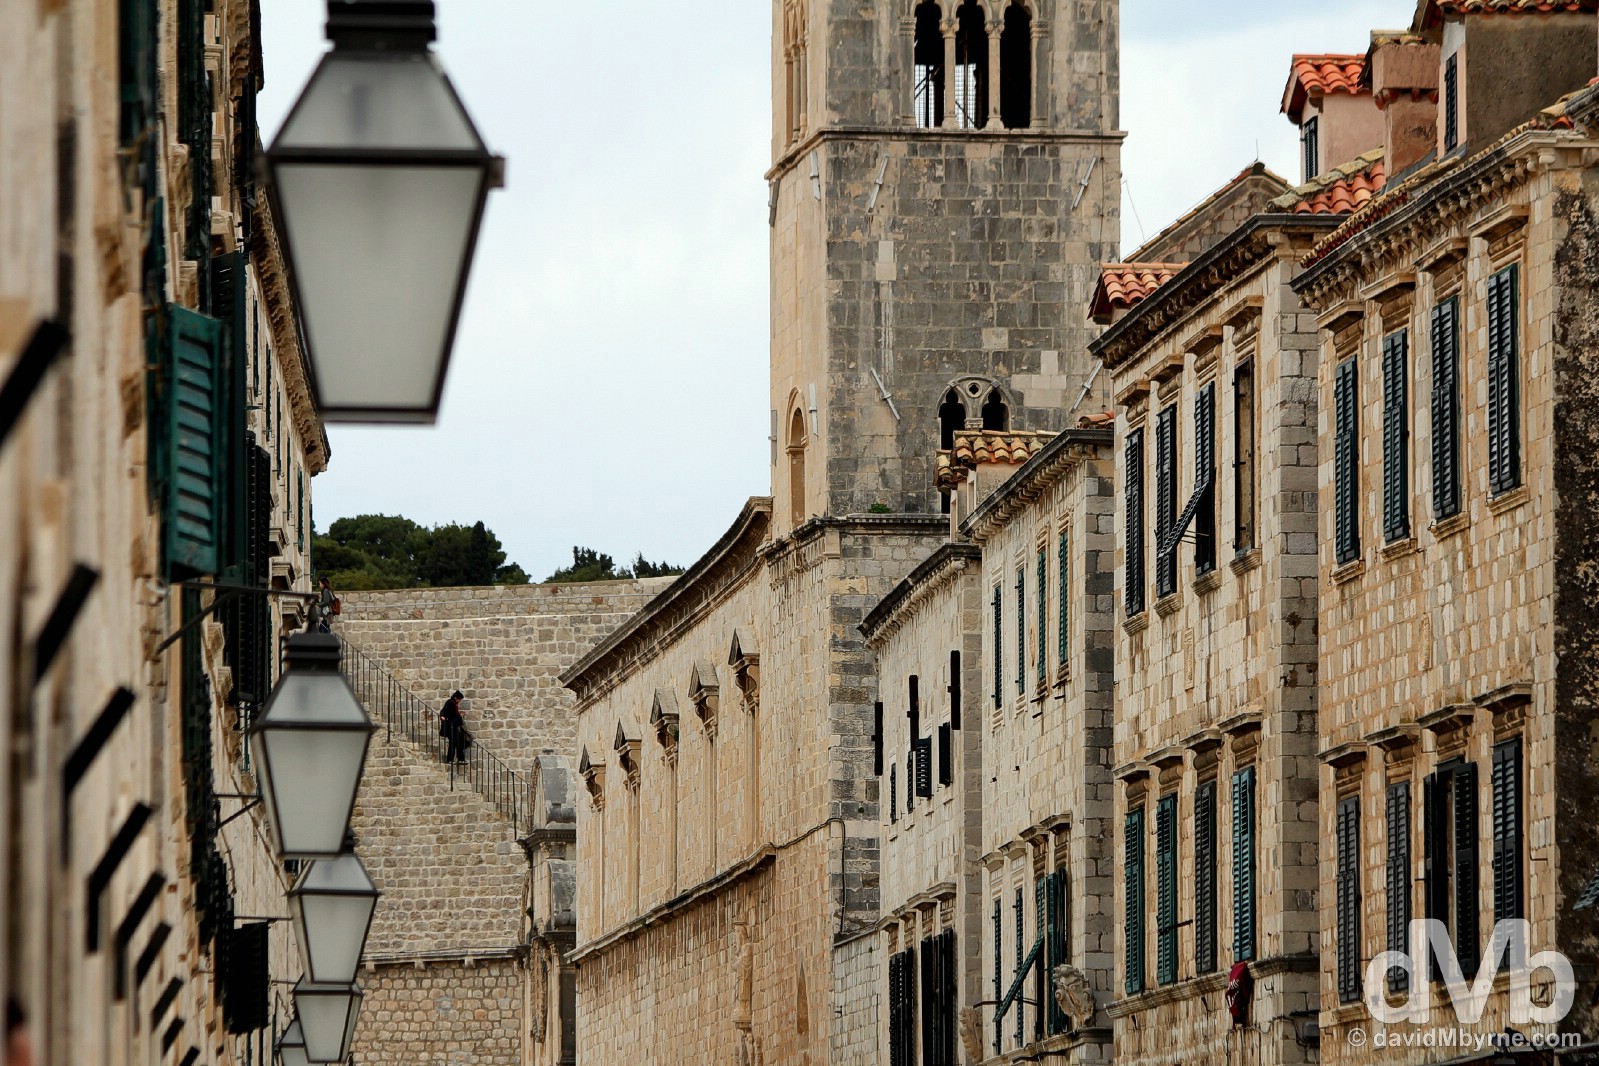 Palca, Old Town, Dubrovnik, Croatia. April 7, 2015.